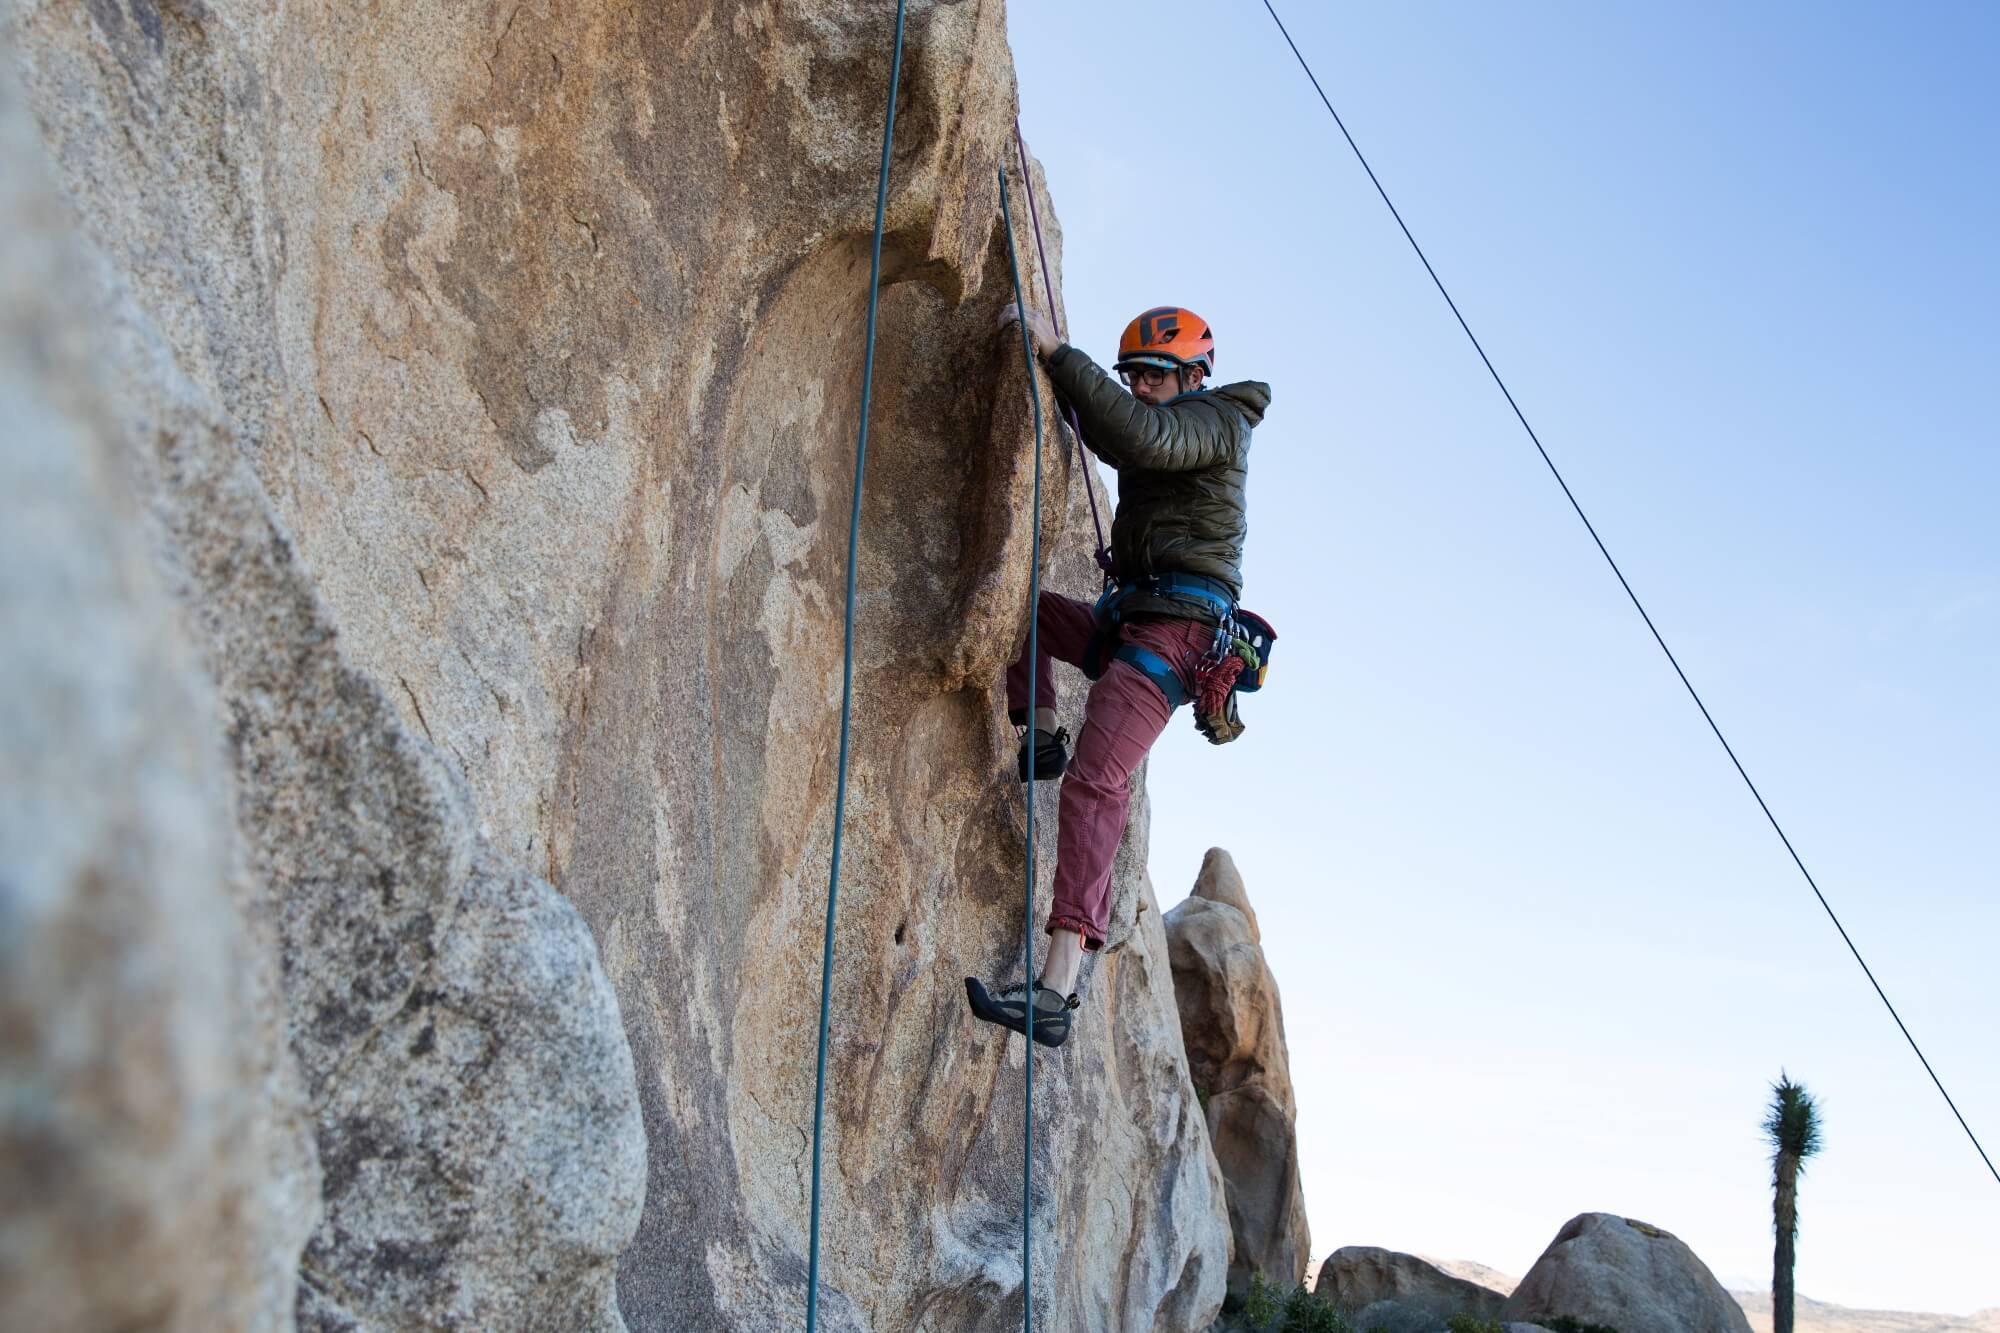 Joshua Tree rock climbing route guide